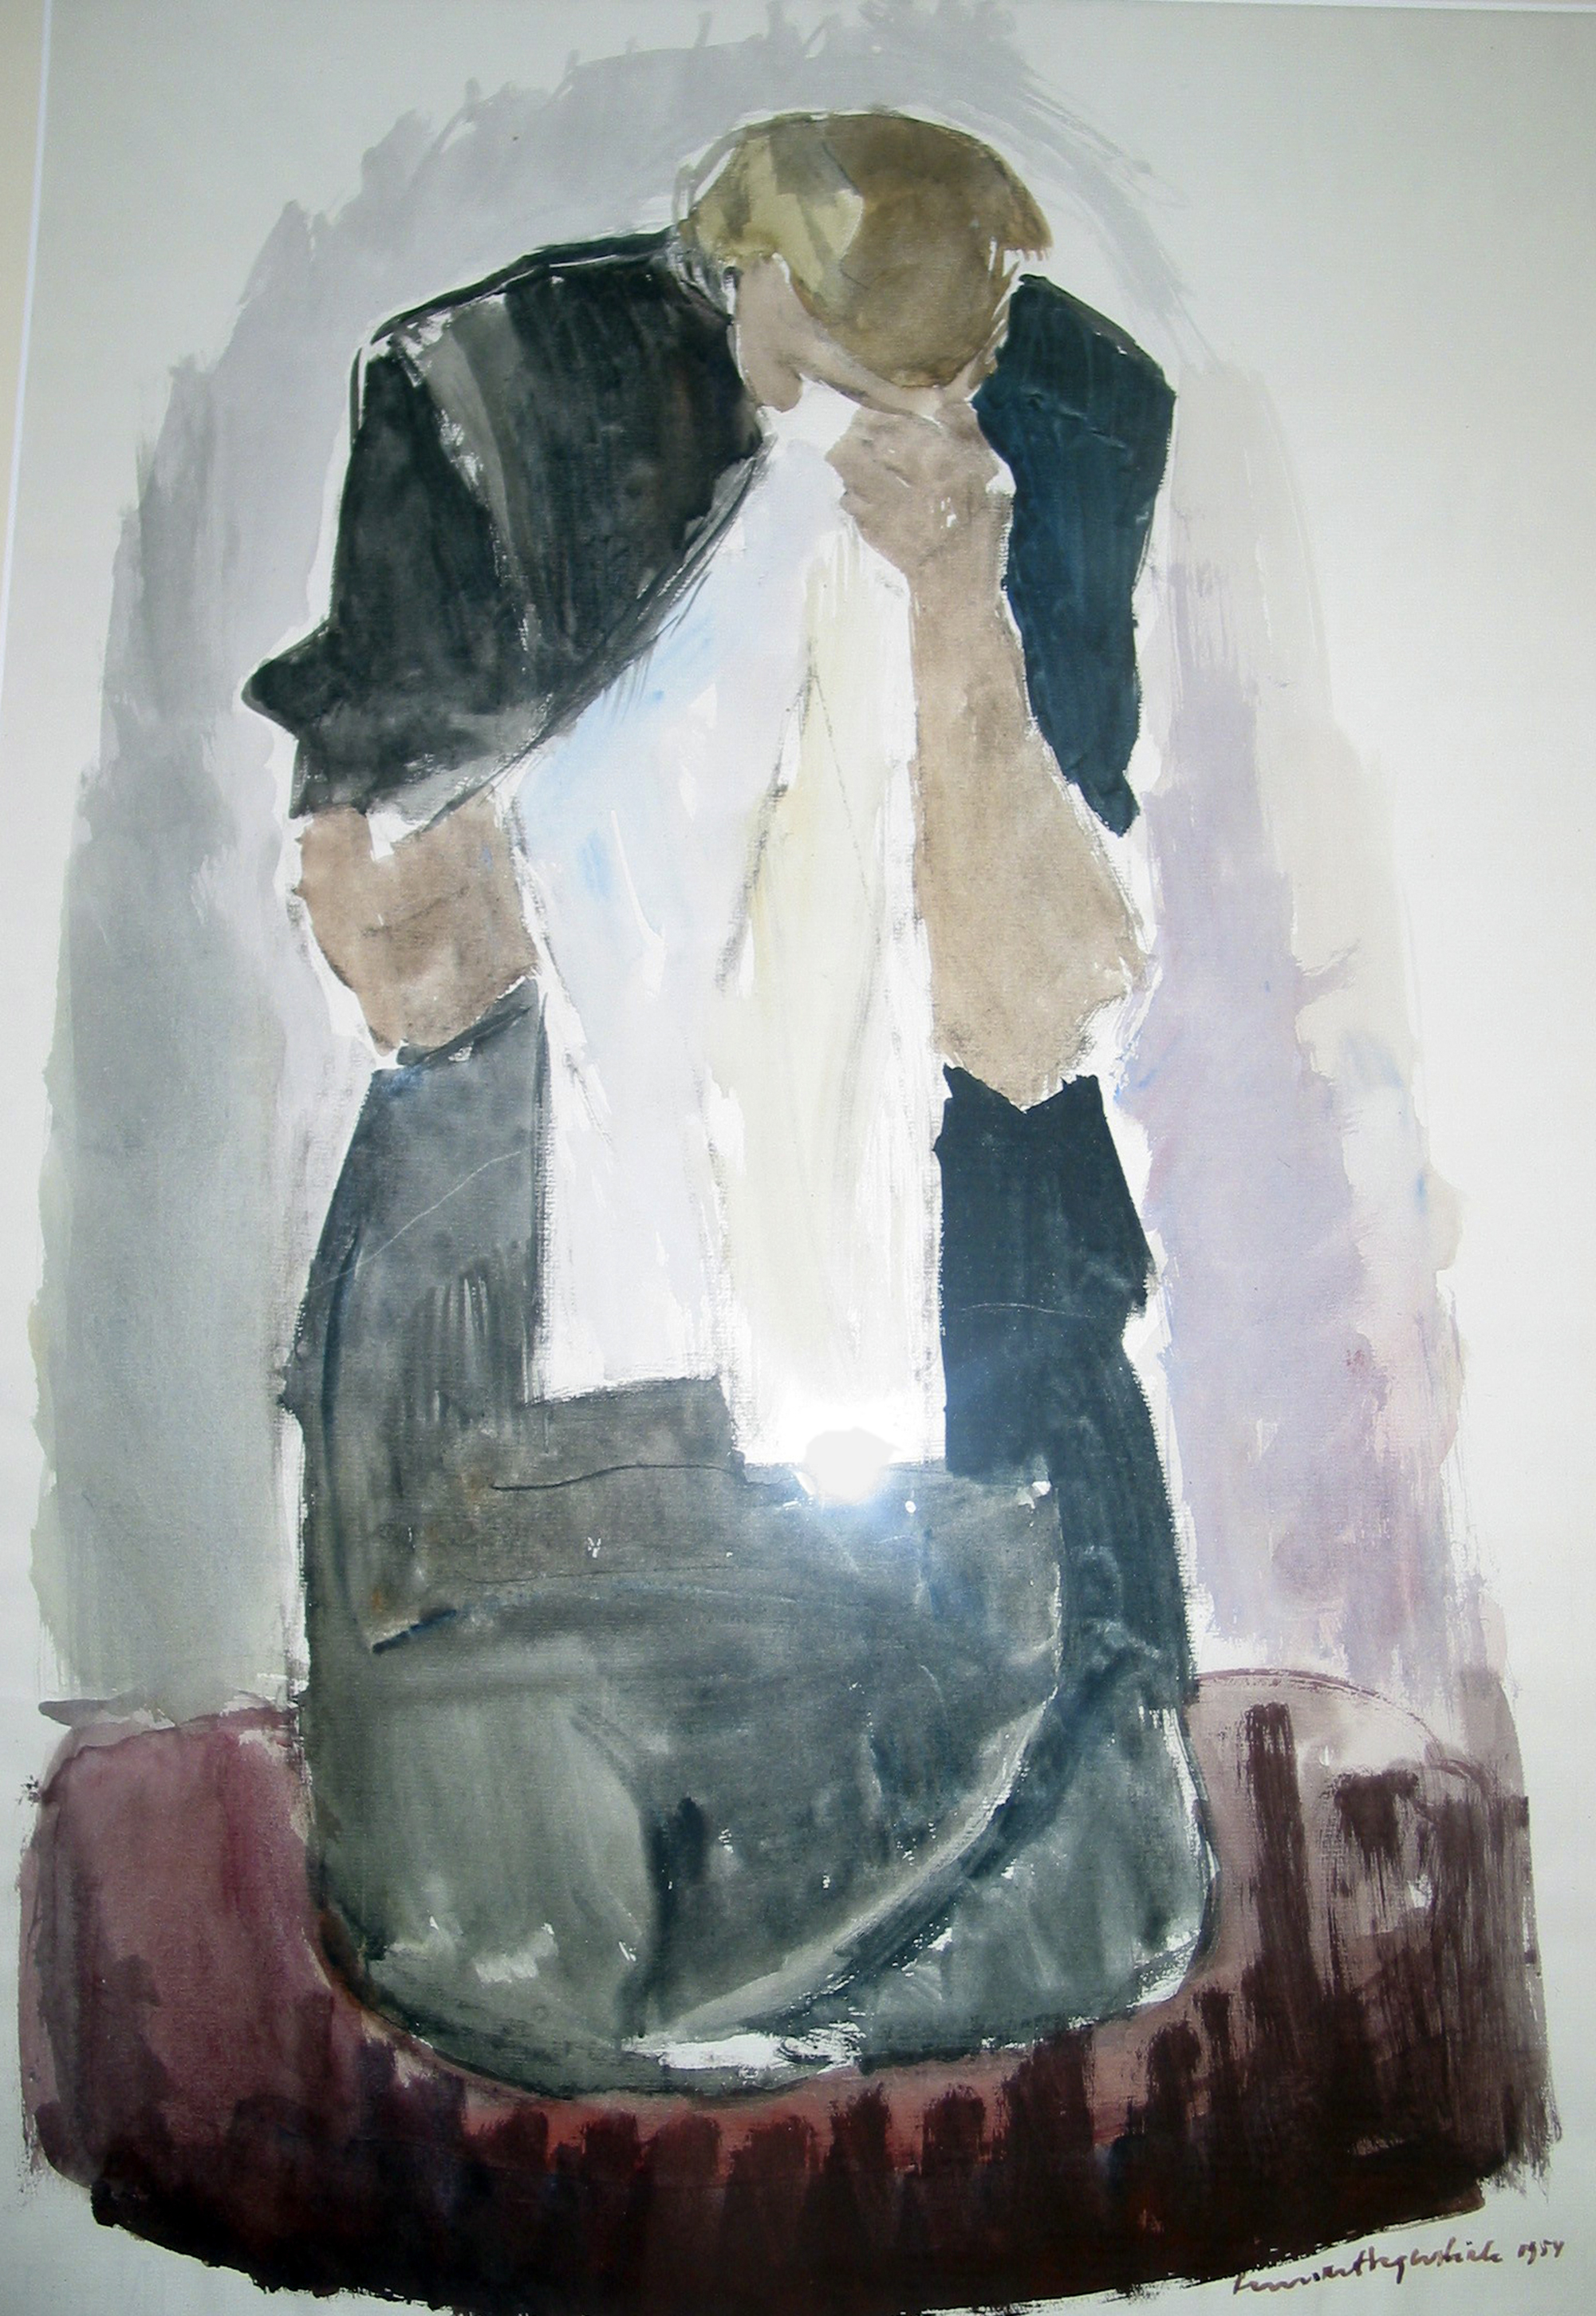 Sureva äiti - Moders sorg
akvarlli/akvarell 65 x 48 cm, 1954